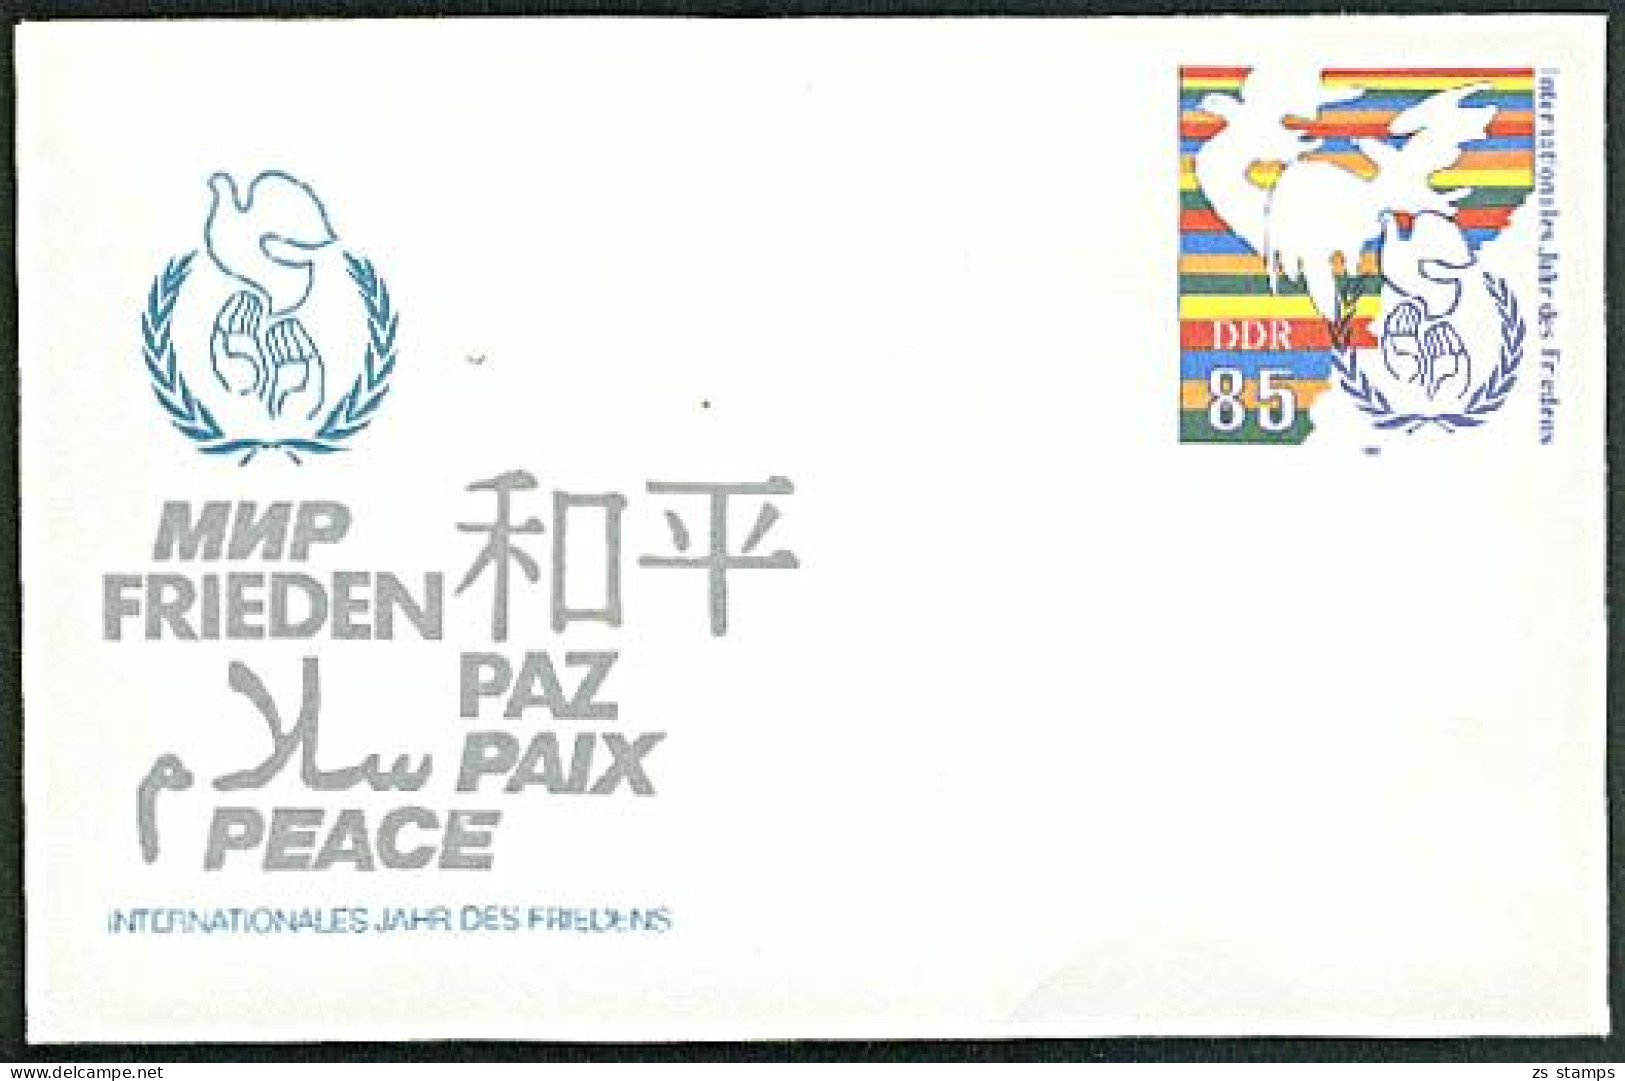 Paix Paz DDR GA U5 * 85 Pf. Frieden Taube Jahr Des Friedens Ganzsachen Umschlag Peace - Covers - Mint